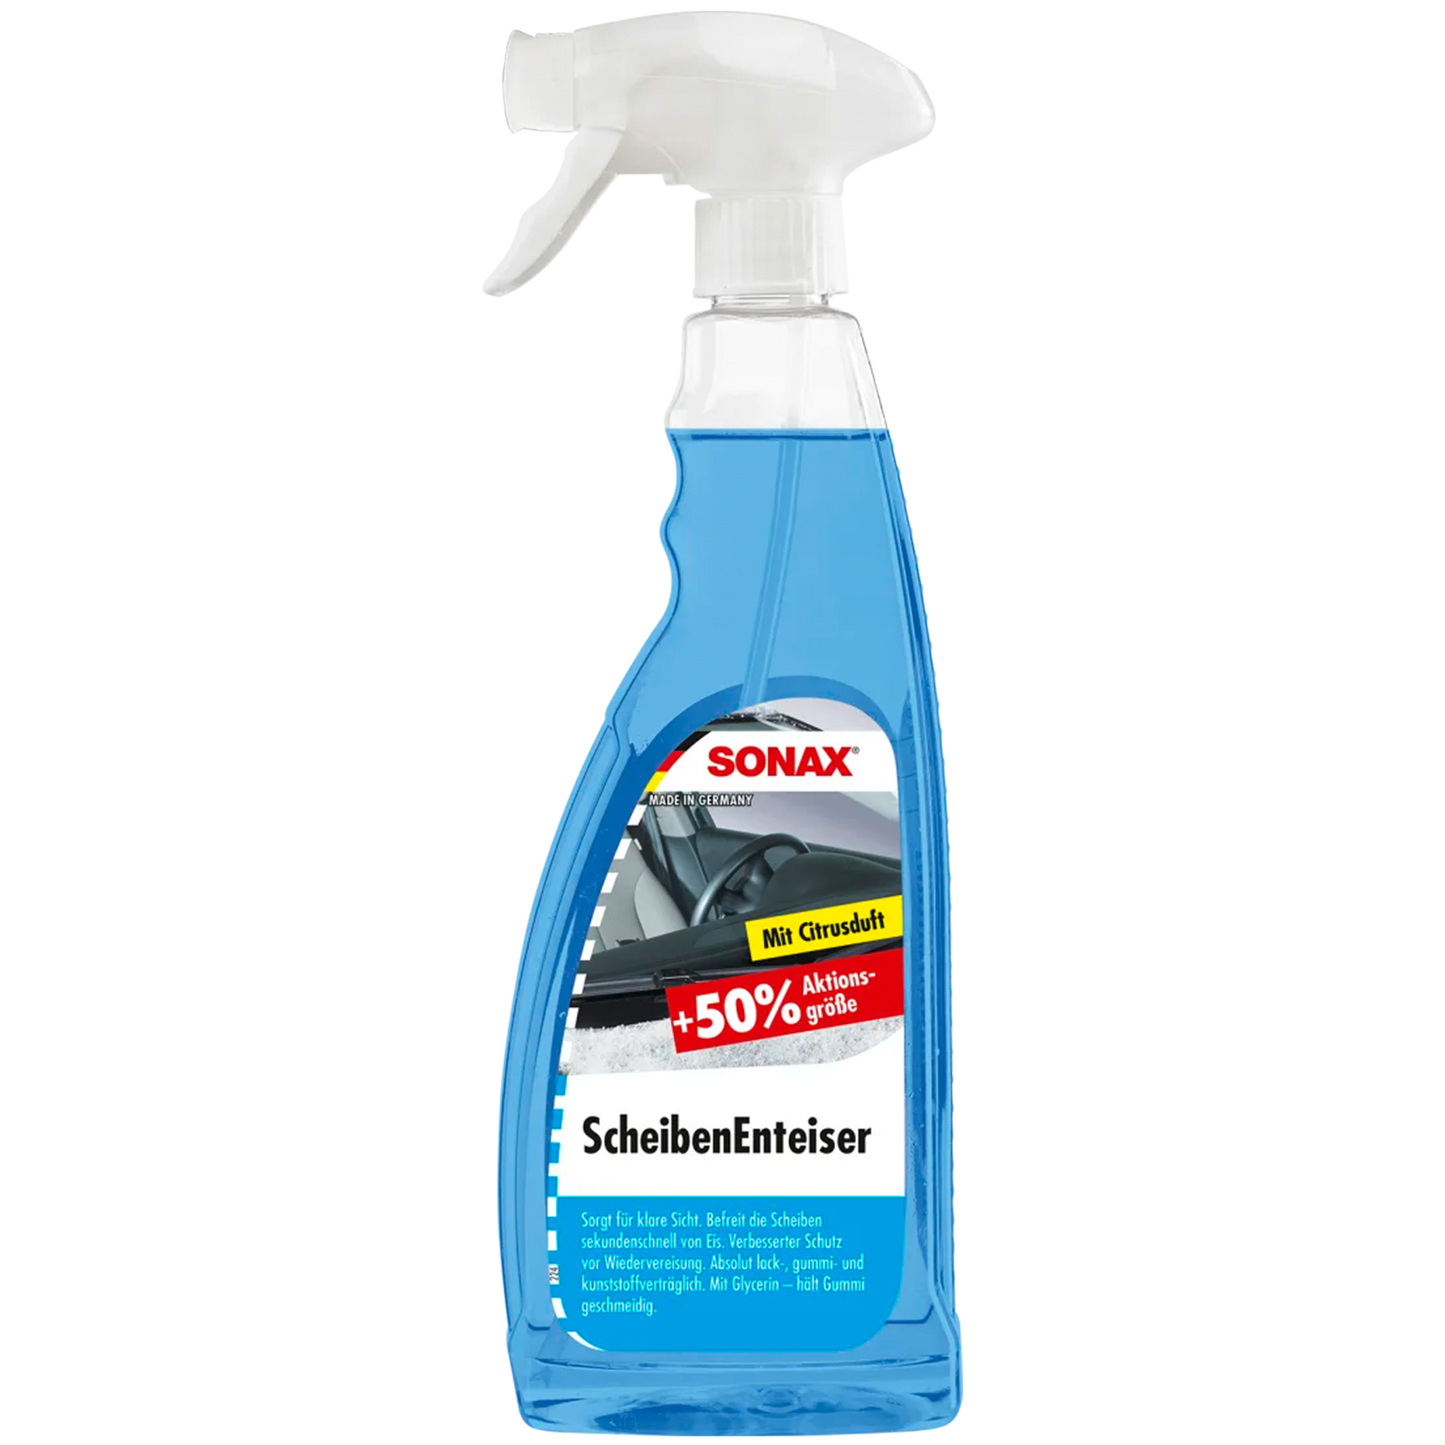 SONAX "ScheibenEnteiser" - Spray, 750ml